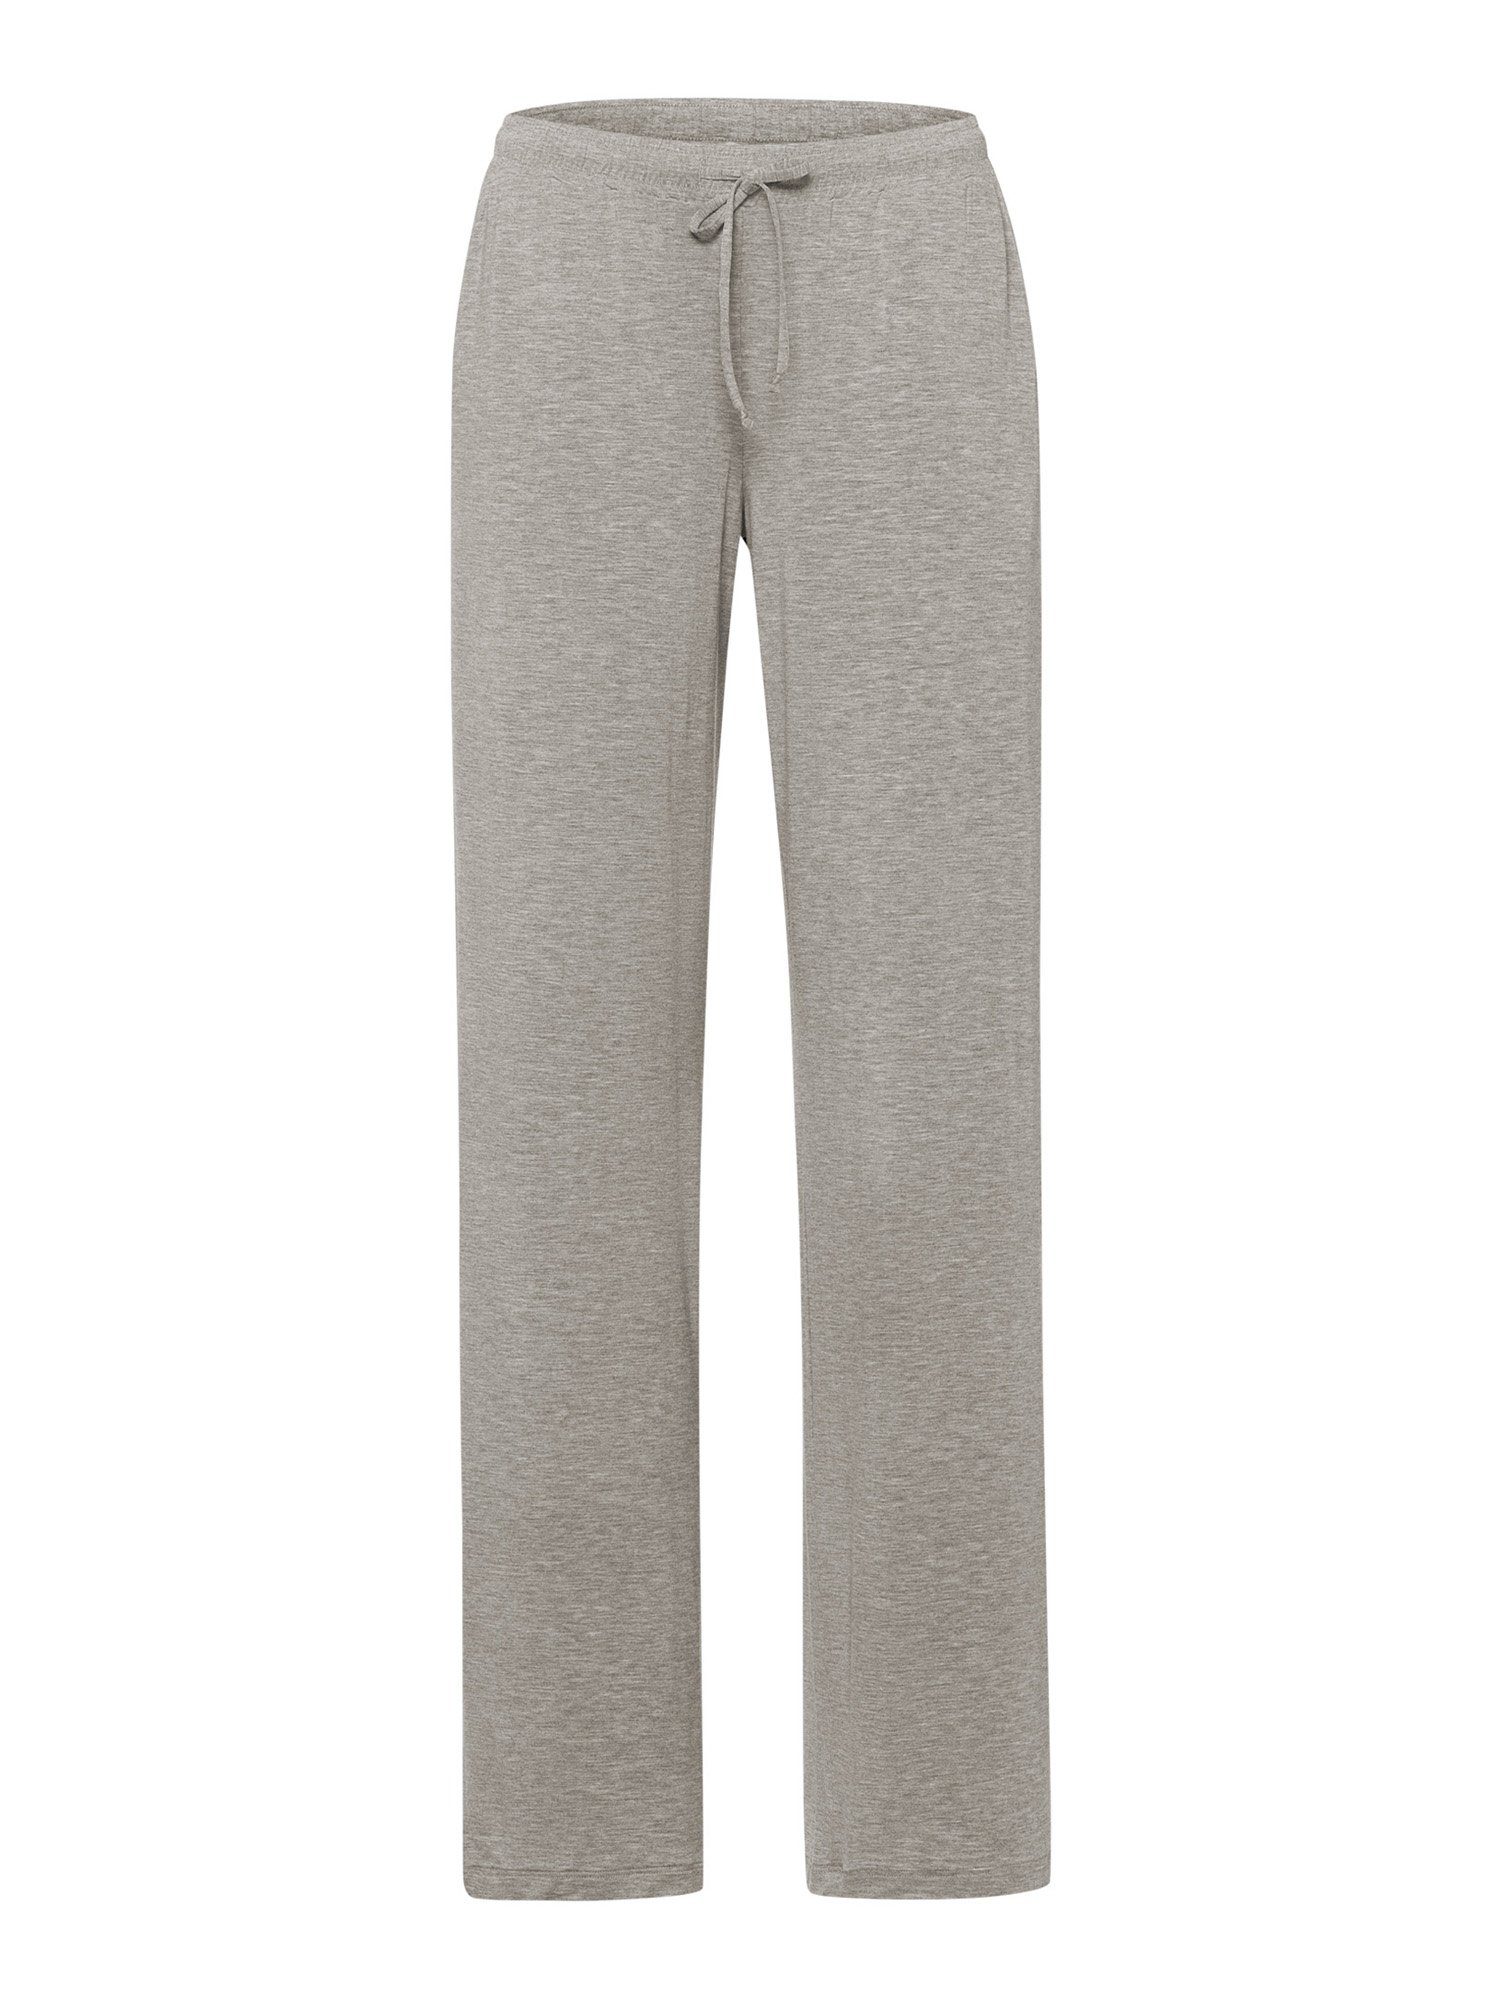 Hanro Pyjamahose Natural Elegance schlaf-hose pyjama schlafmode grey melange